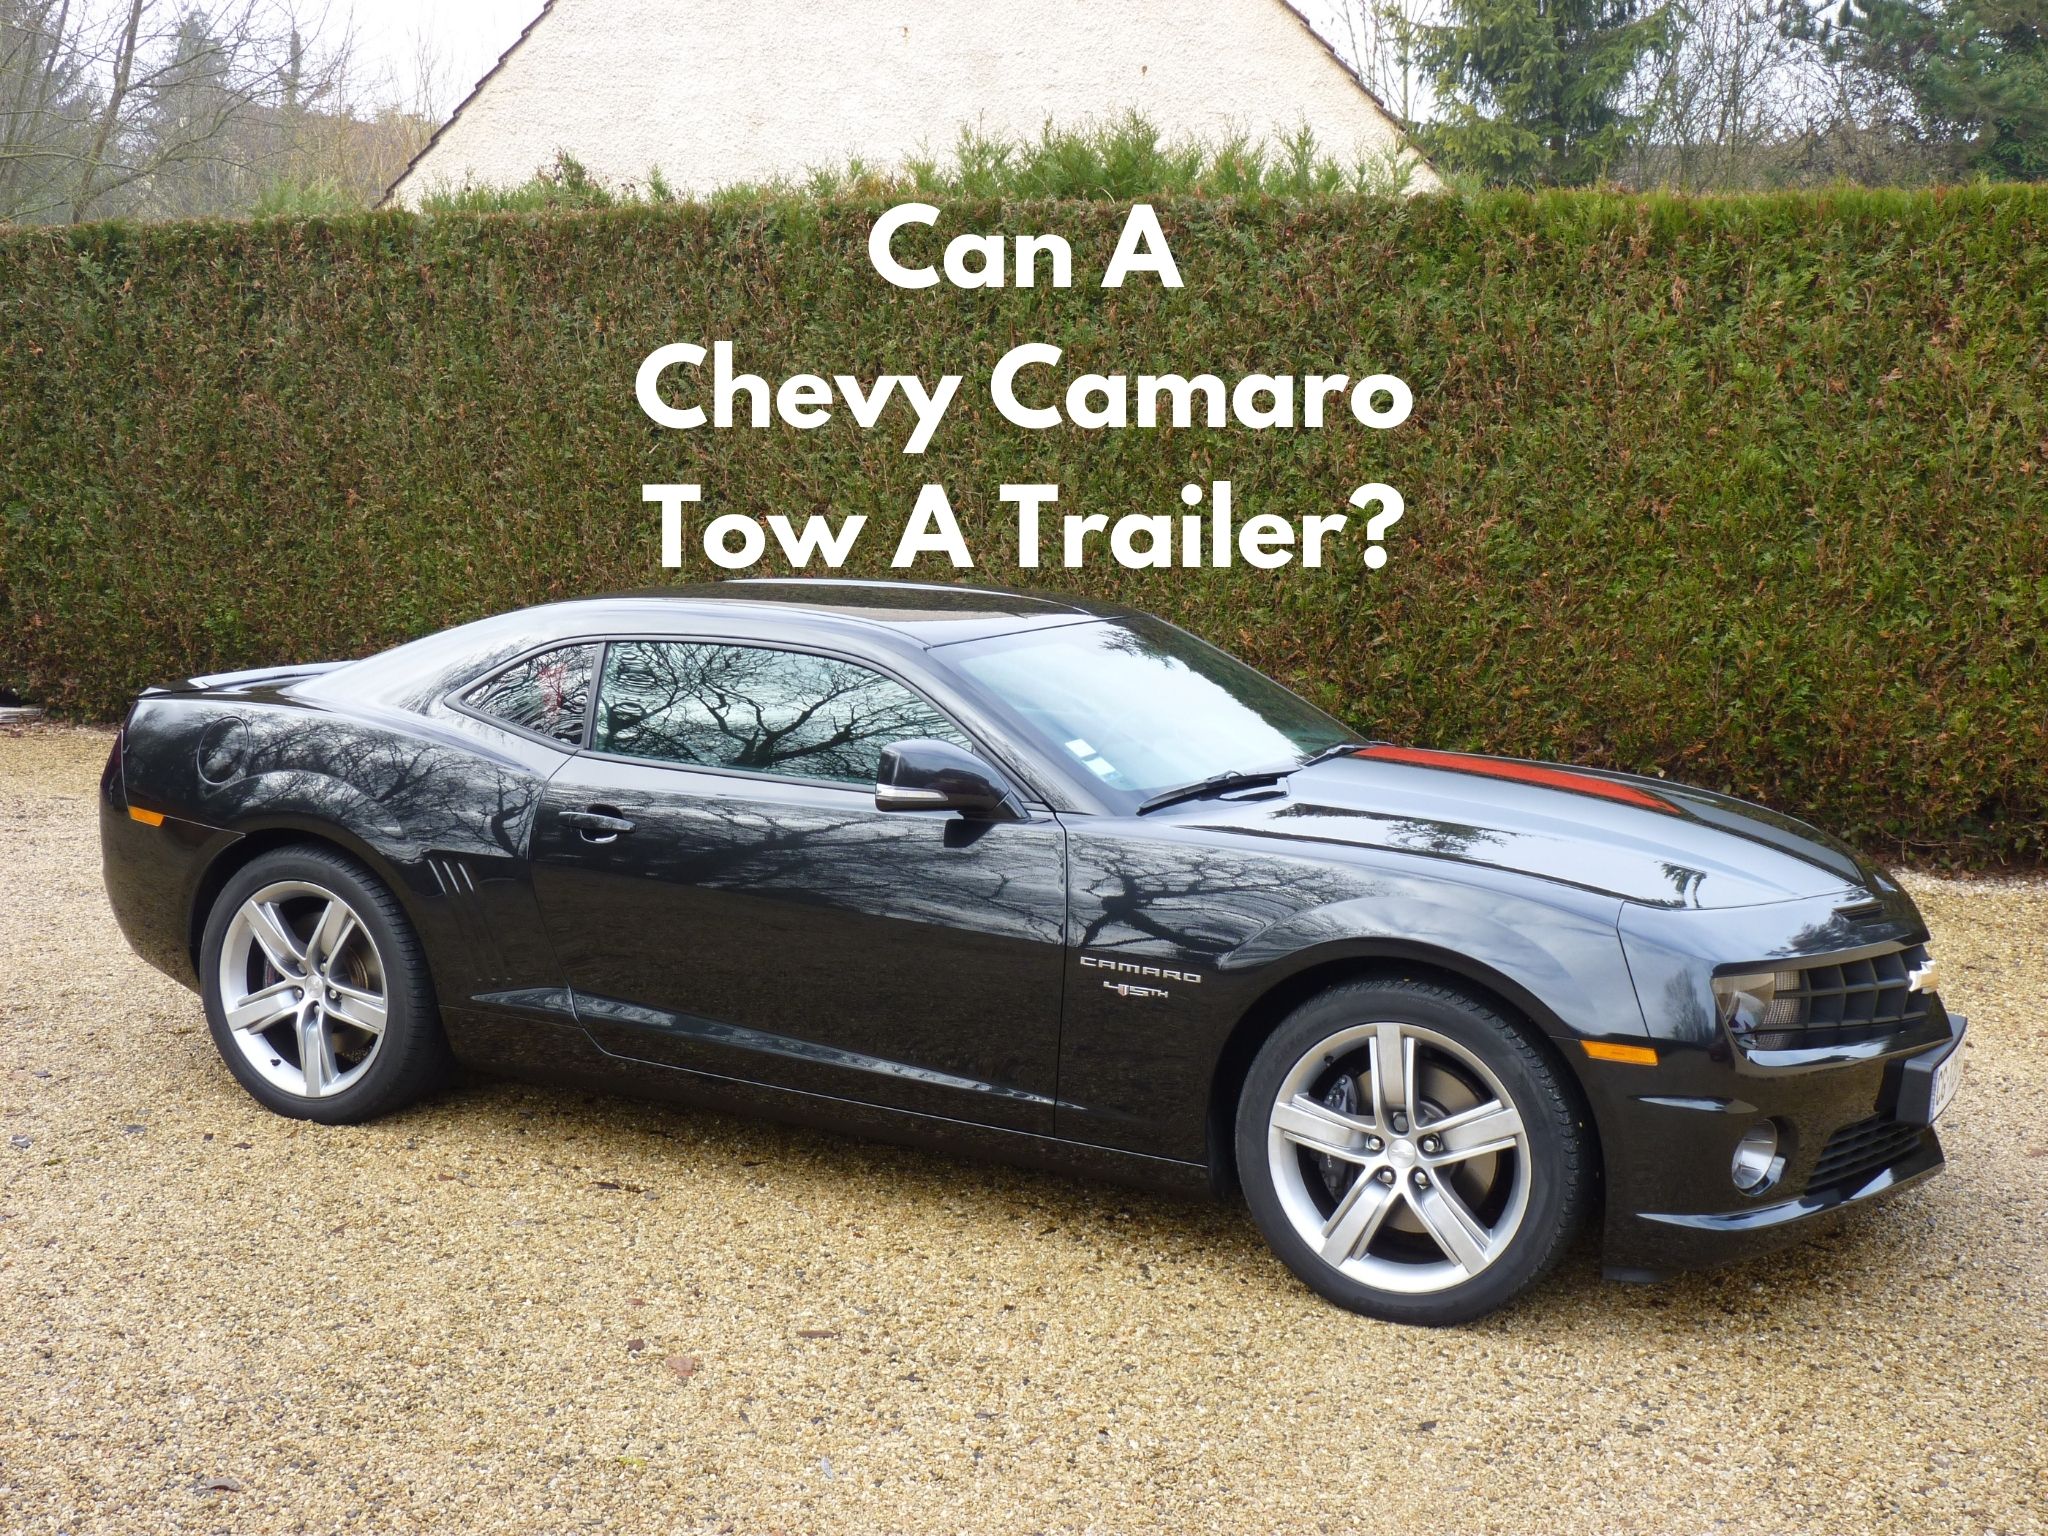 Can A Chevy Camaro Tow A Trailer